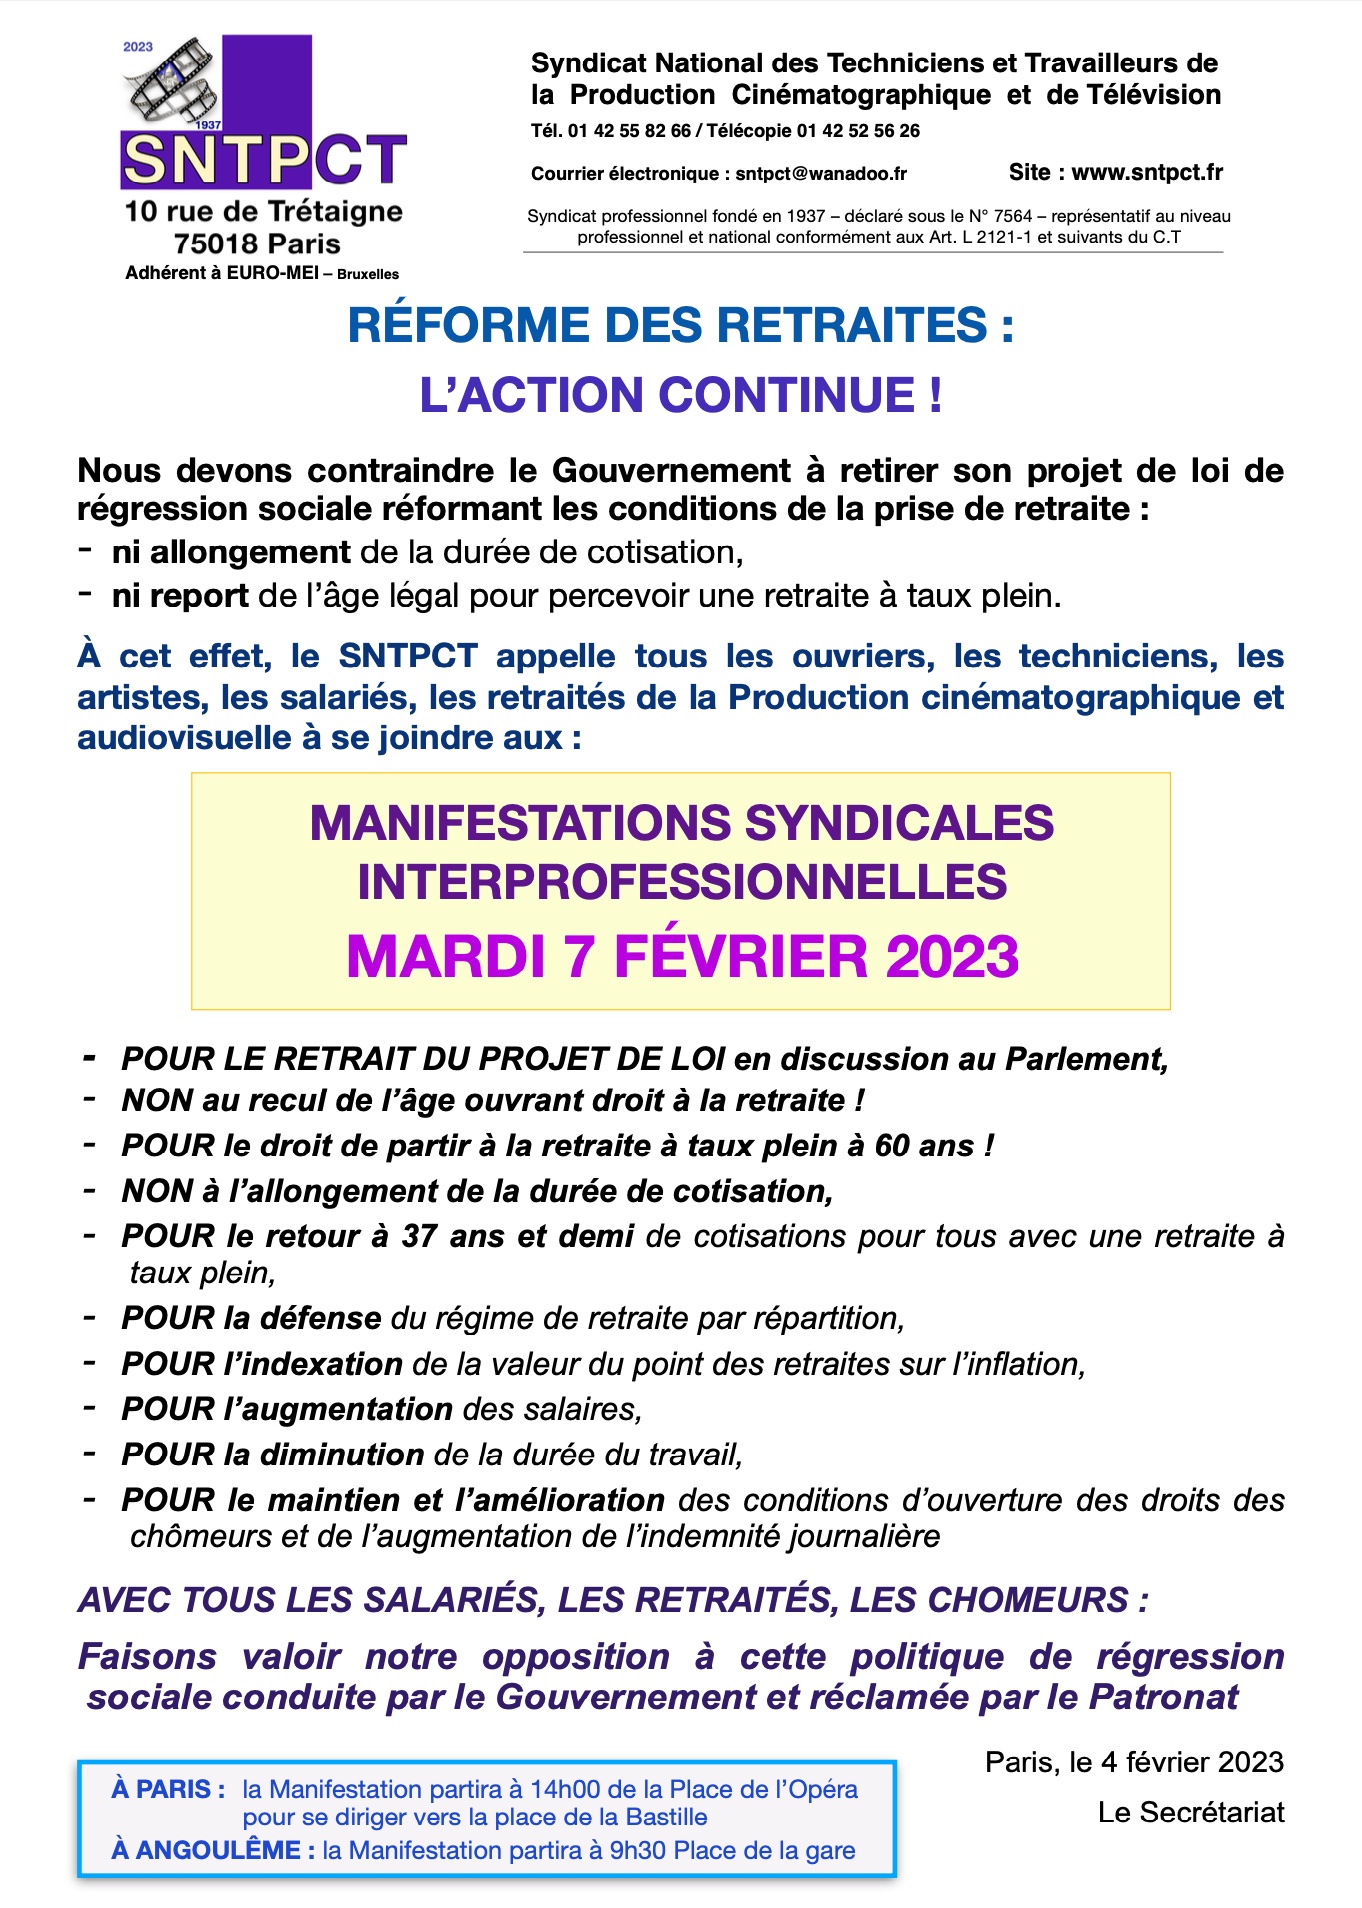 SNTPCT pour Manifestations interro retraites du 31 janvier 2023